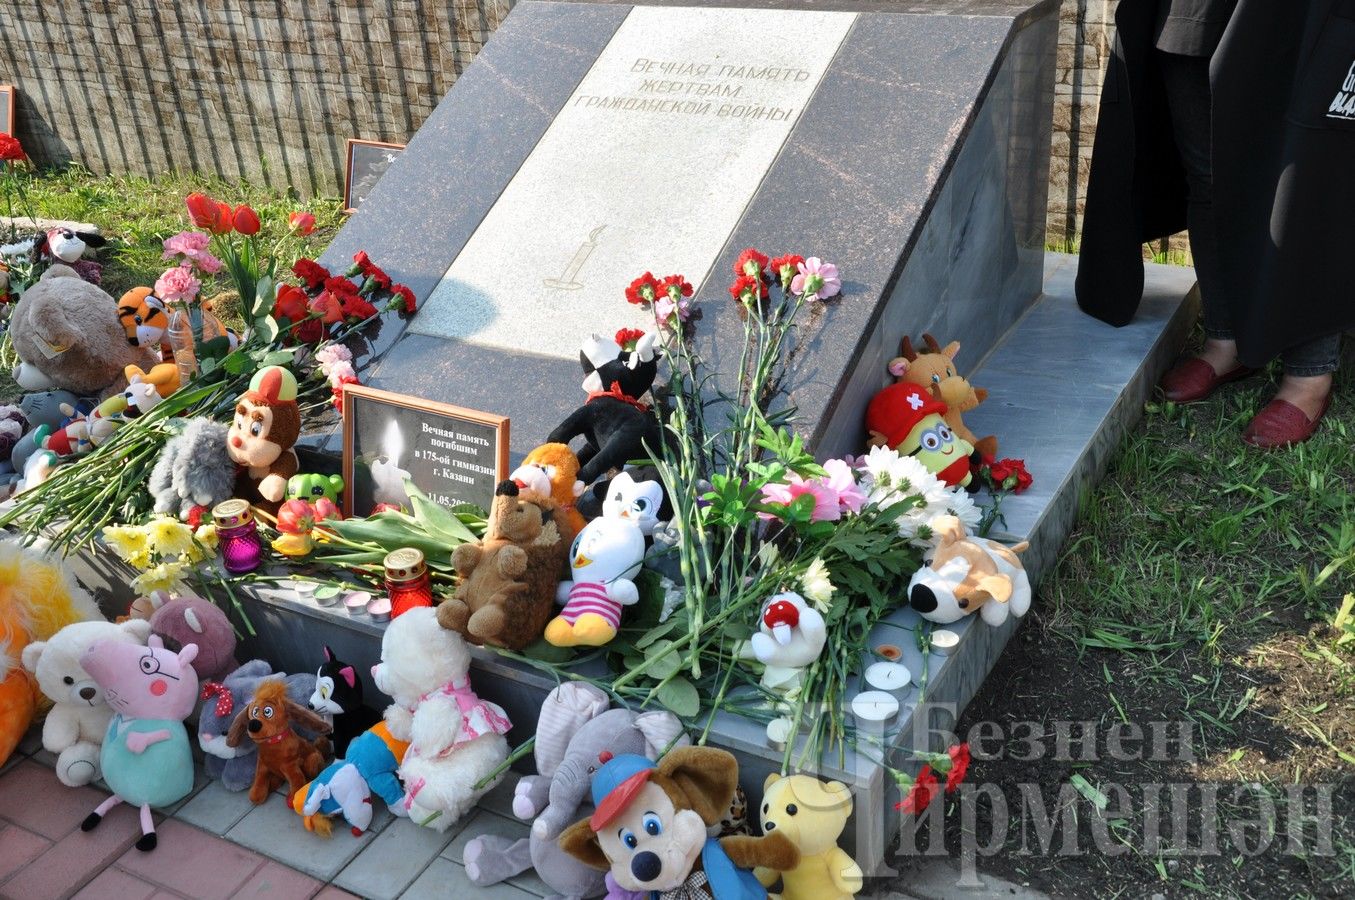 Черемшанцы скорбят по погибшим от руки террориста в Казанской гимназии (ФОТОРЕПОРТАЖ)